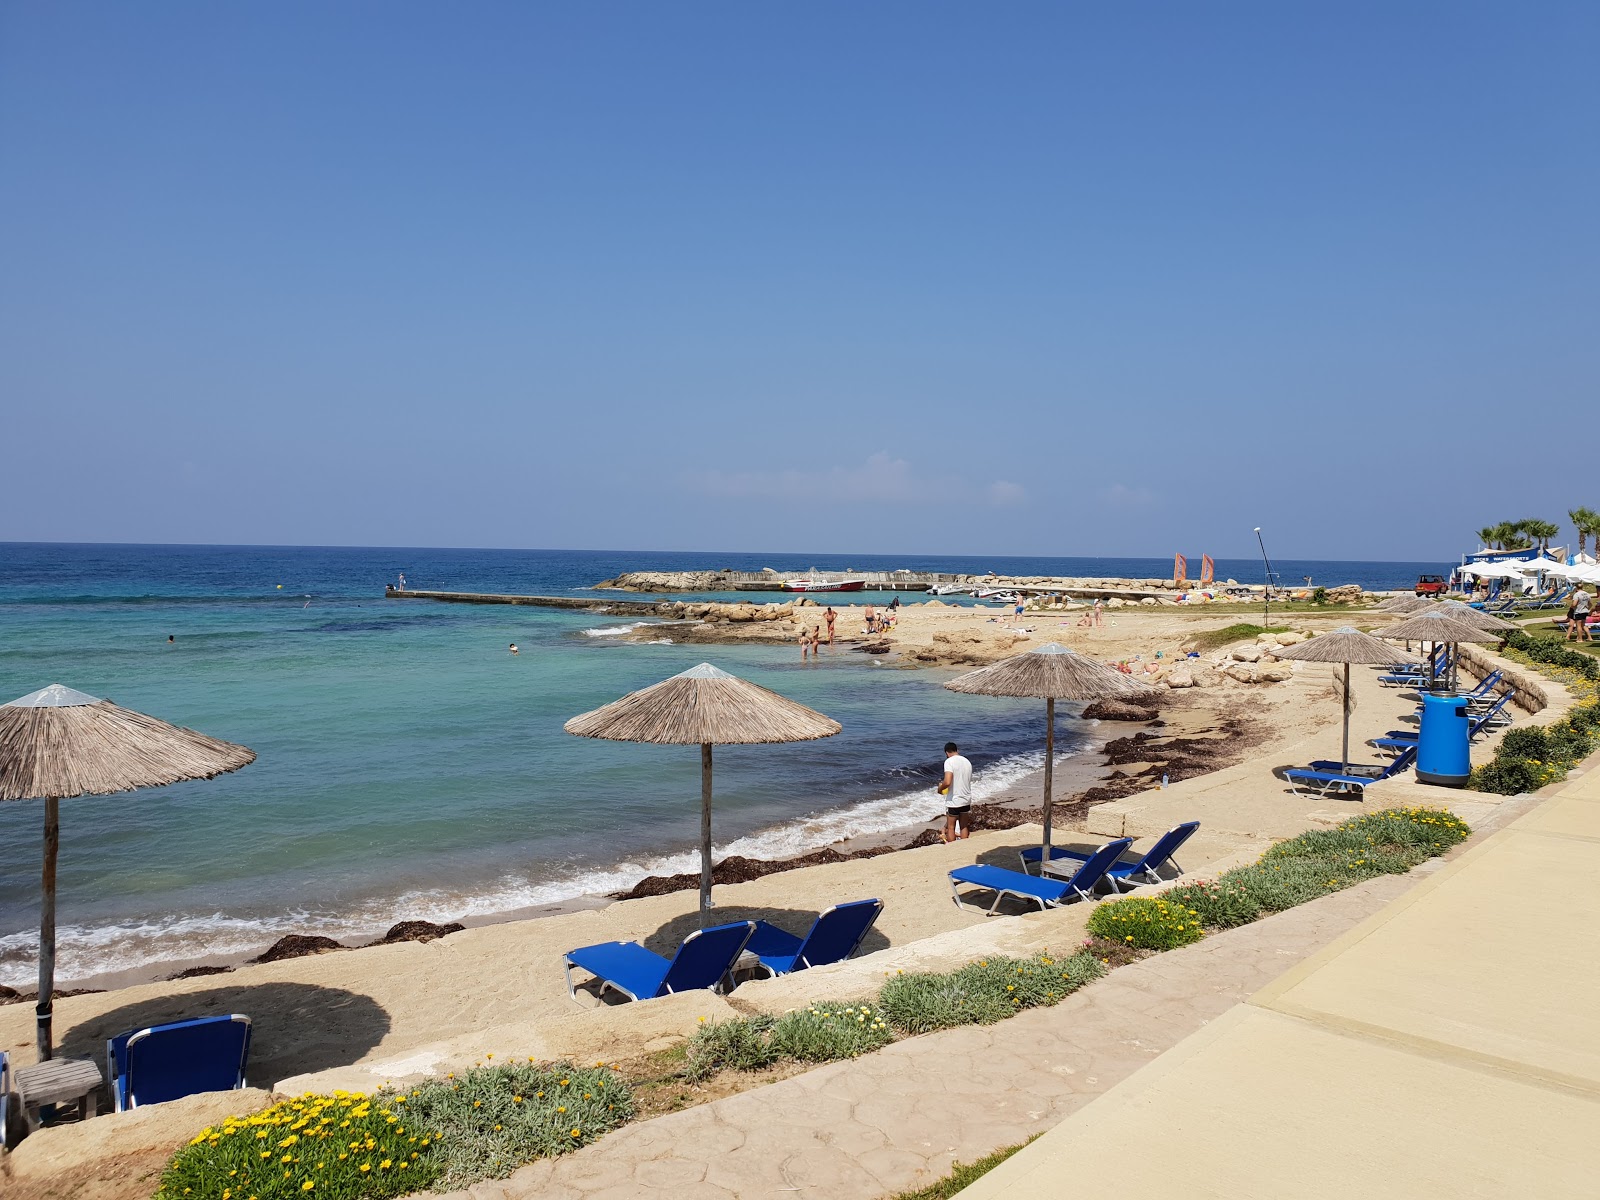 Photo de Pachyammos beach - endroit populaire parmi les connaisseurs de la détente